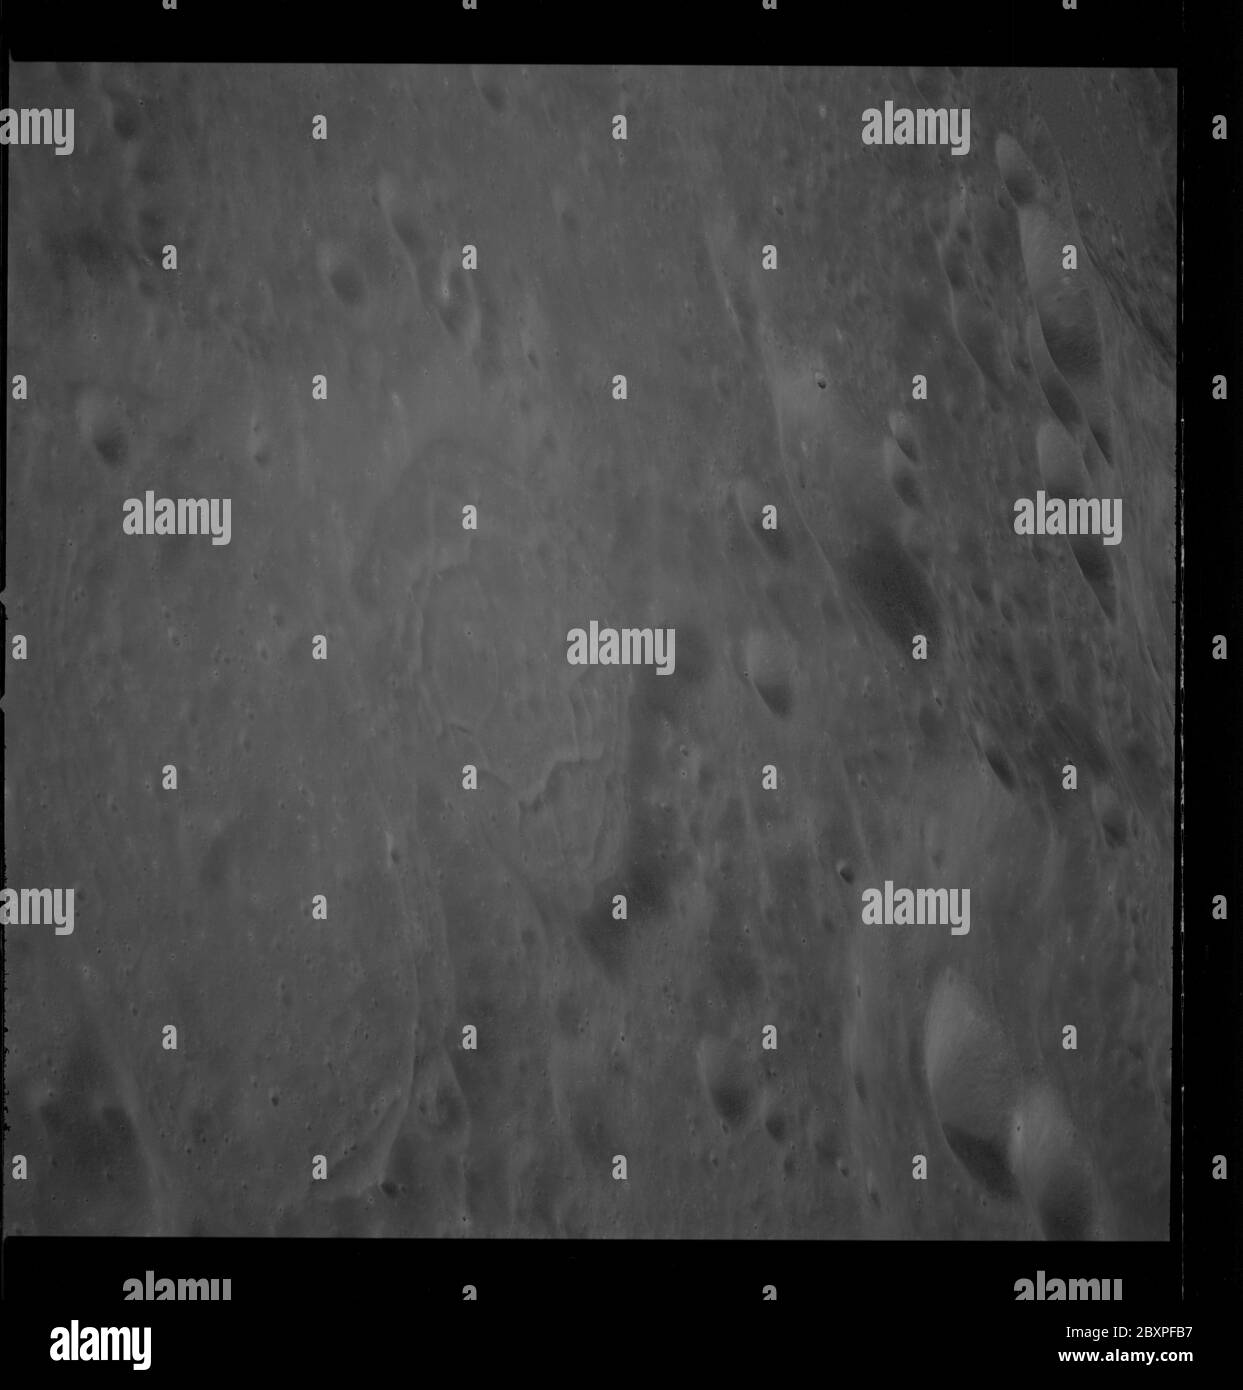 AS10-33-4969 - Apollo 10 - Apollo 10 Missionsbild - Ziel der Gelegenheit 29; Umfang und Inhalt: Die ursprüngliche Datenbank beschreibt dies als: Beschreibung: Schräge Ansicht des Ziels der Gelegenheit. Die Länge war 146.4 Grad Ost und die Breite 5.7 Grad Süd. Der Sonnenwinkel war hoch. Filmmagazin war T, Filmtyp war 3400 mit 250mm Objektiv. Der Filmtyp war 70mm schwarz-weiß. Themengebiet: Apollo 10 Flug, Mond Kategorien: Mondbeobachtungen Original: Film - 70MM S&W Interior Exterior: Exterior Ground Orbit: On-Orbit; 1967 – 1972; Stockfoto